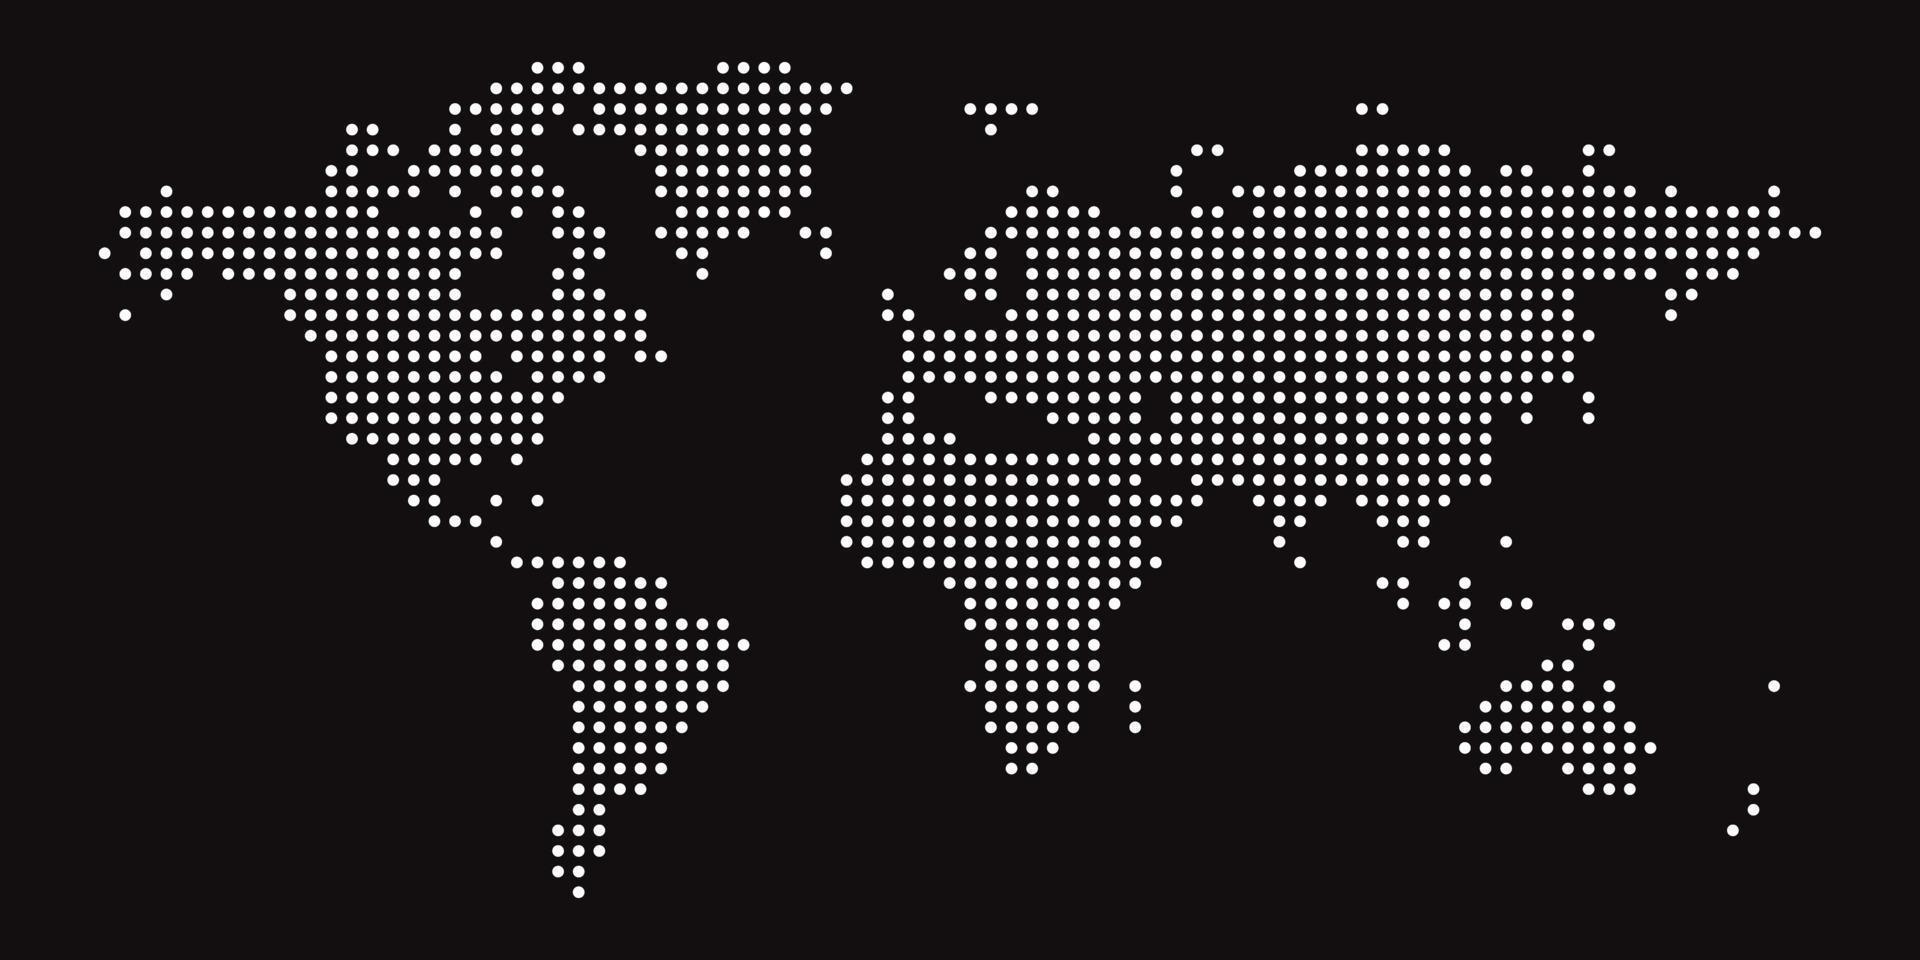 carte du monde sur fond noir. modèle de carte du monde avec les continents, l'amérique du nord et du sud, l'europe et l'asie, l'afrique et l'australie vecteur